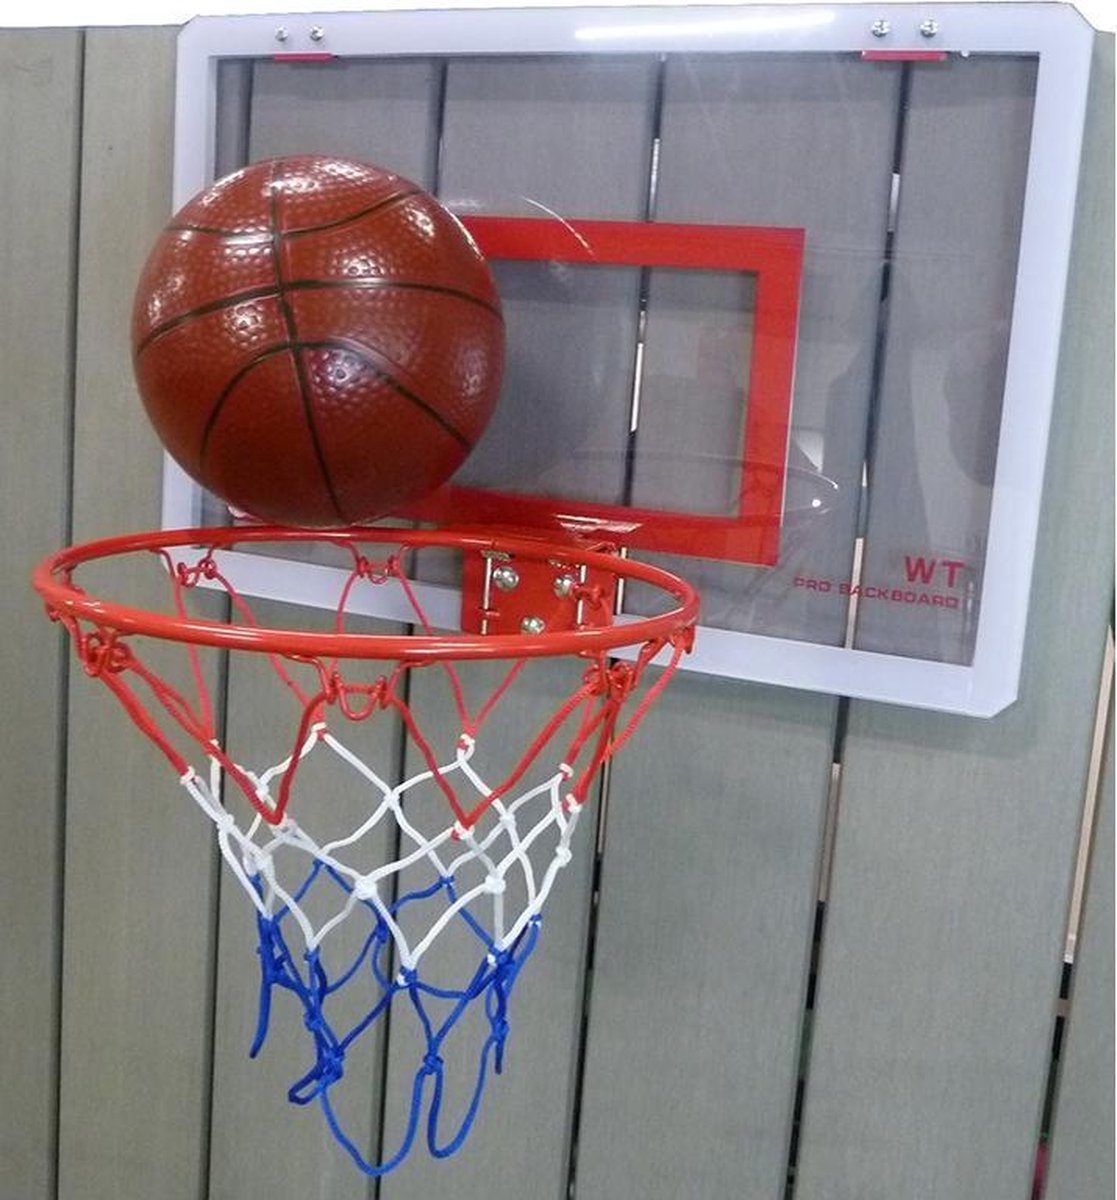 Beste basketbalbord voor slaapkamermuur of kelder: Basket Head